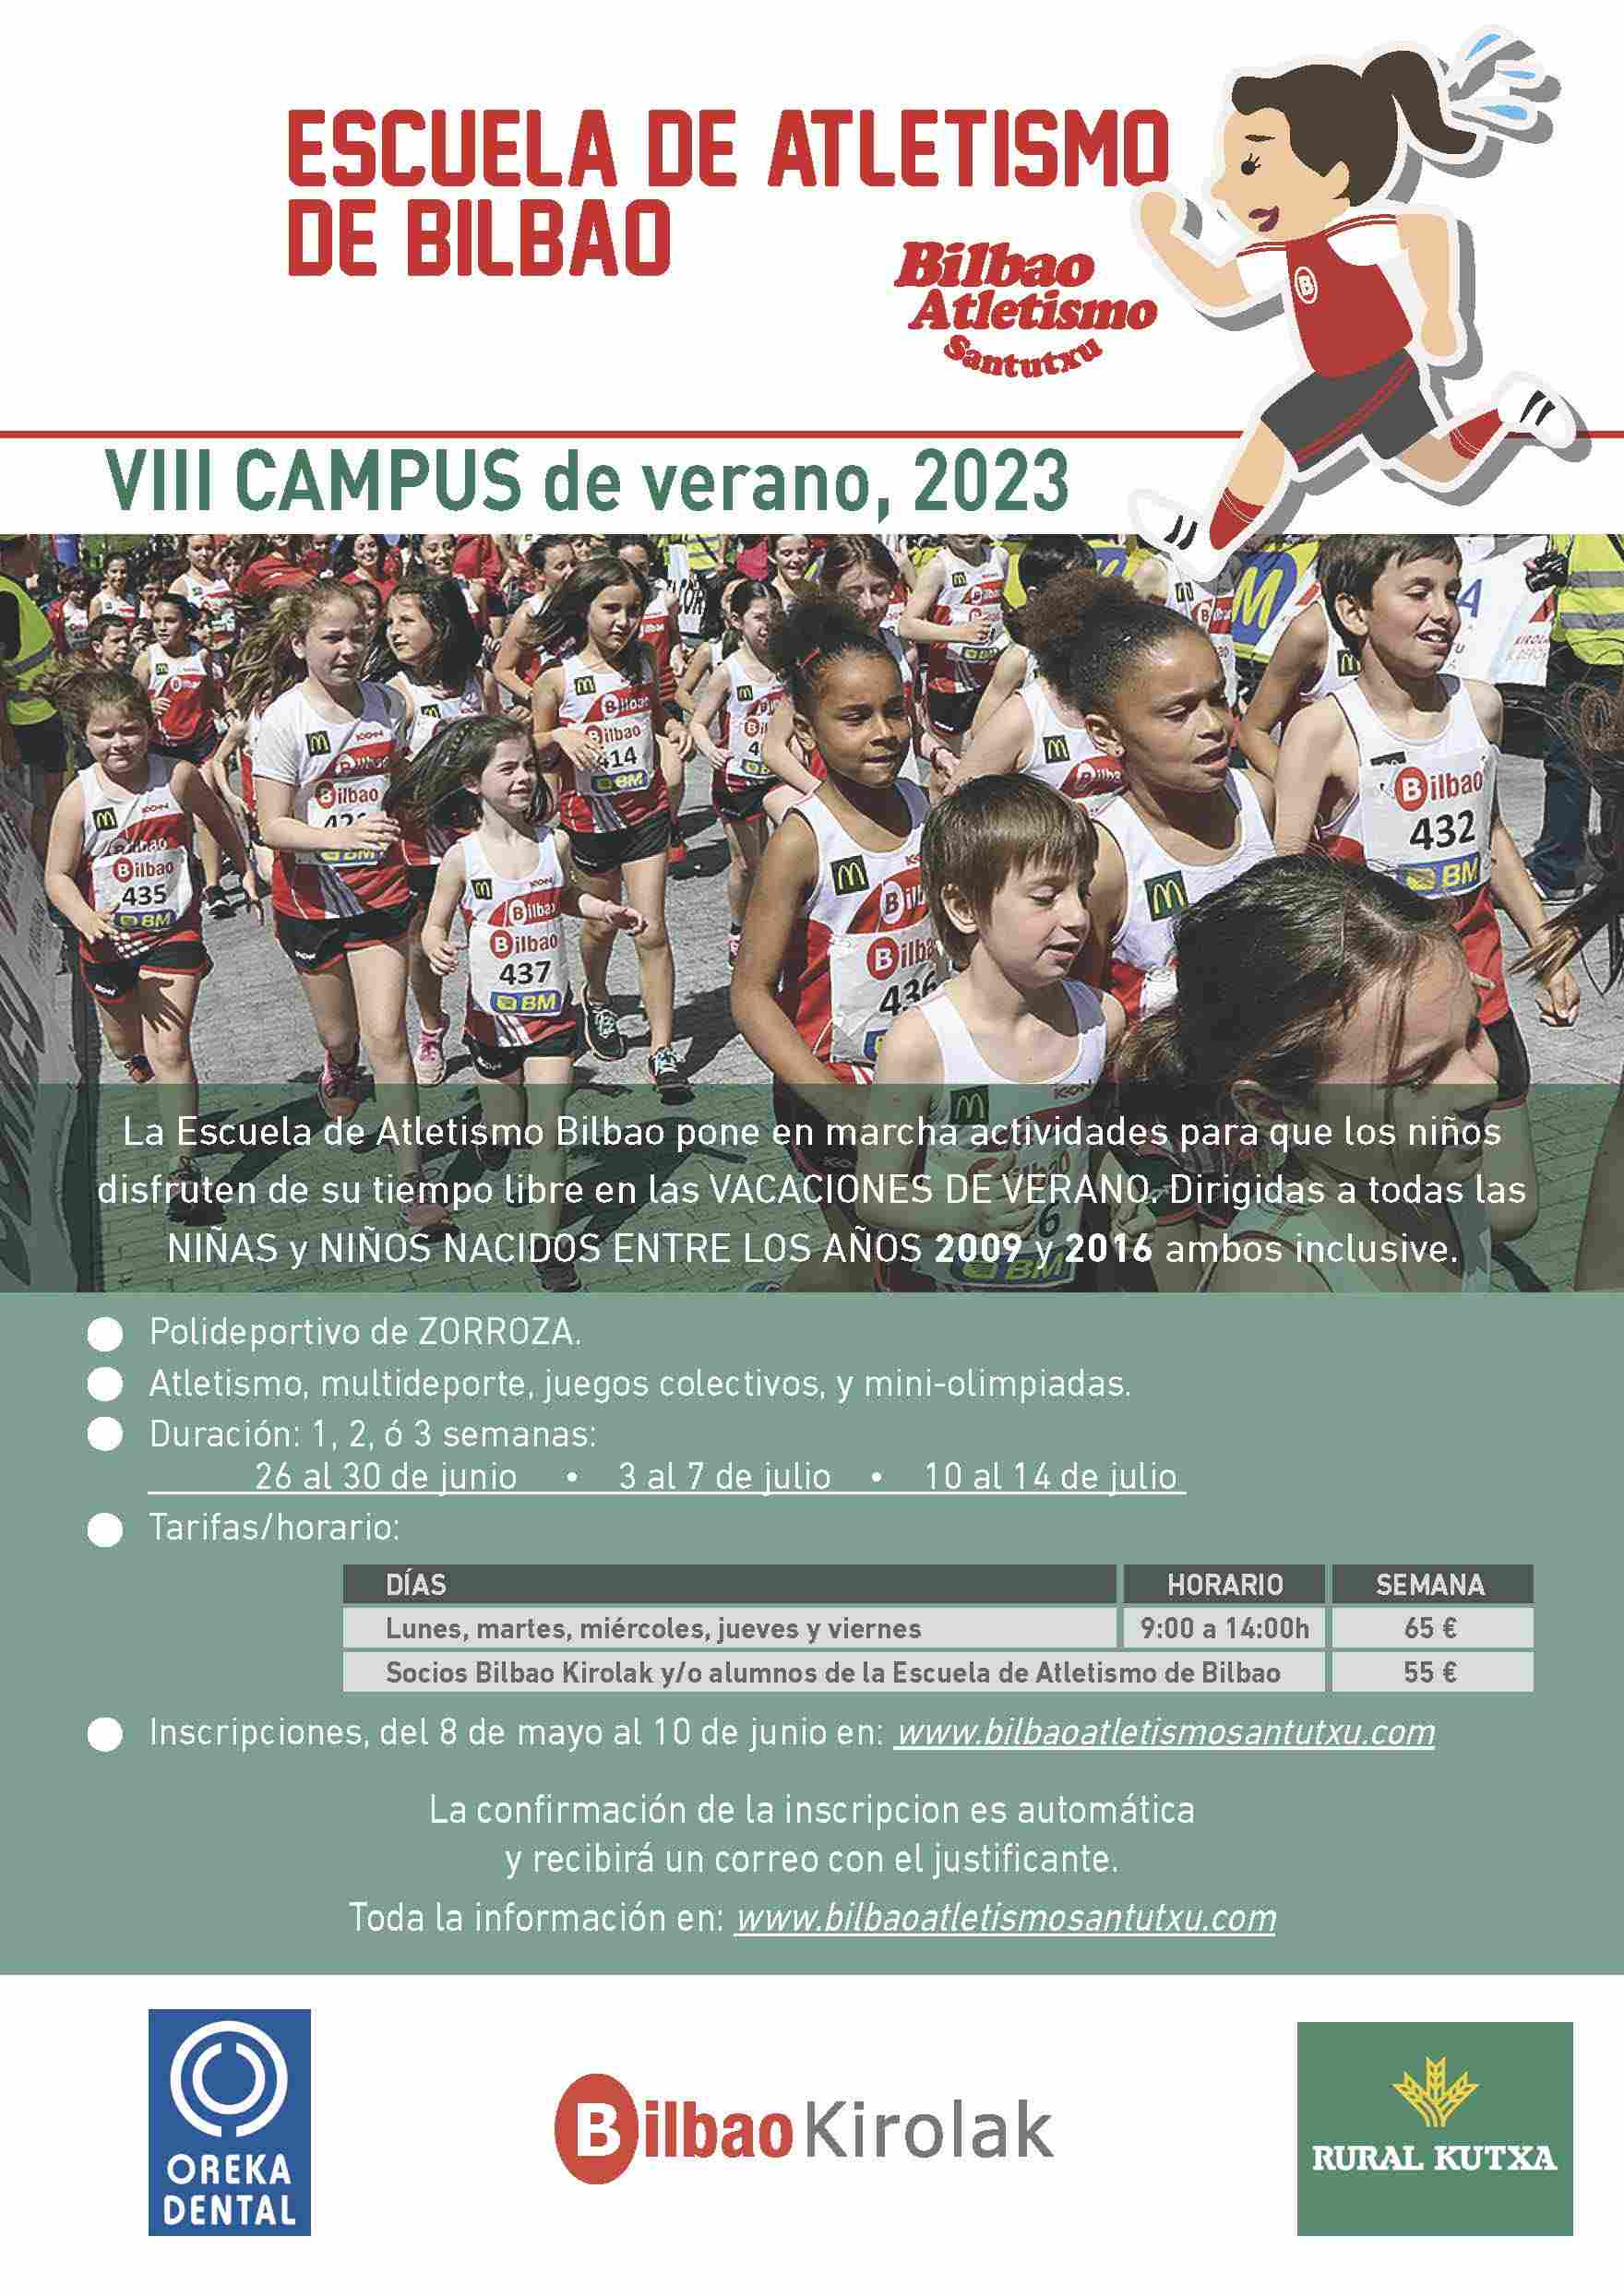 VIII CAMPUS DE VERANO 2023 - Inscríbete